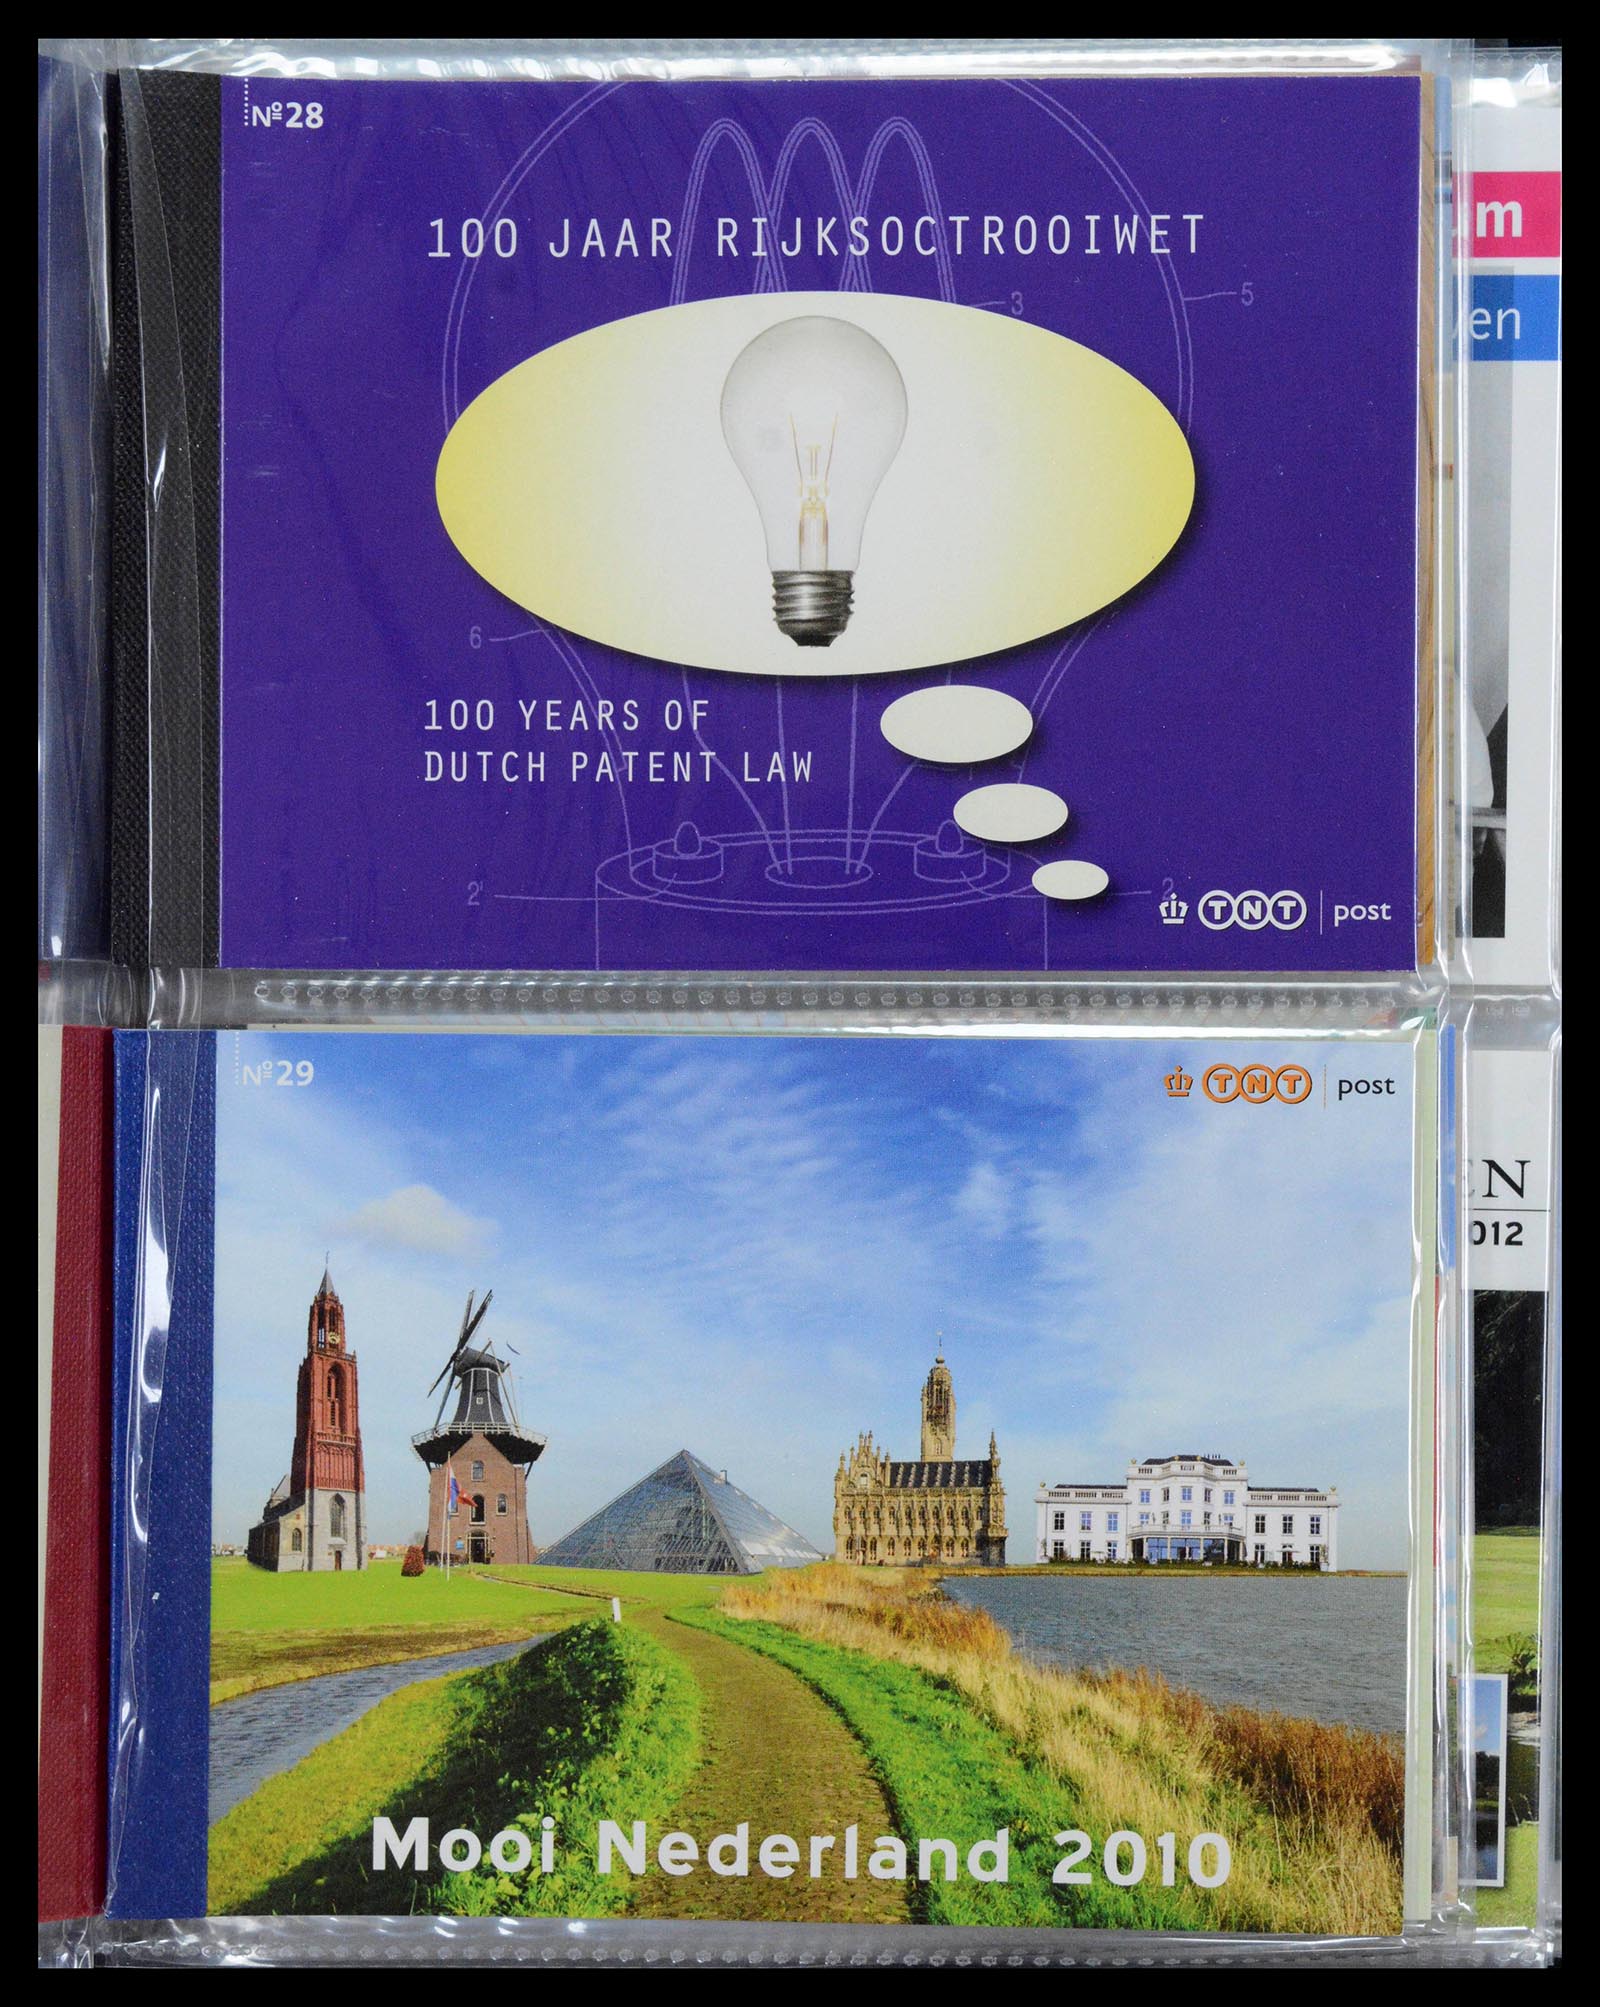 39018 0015 - Stamp collection 39018 Netherlands prestige booklets 2003-2016.